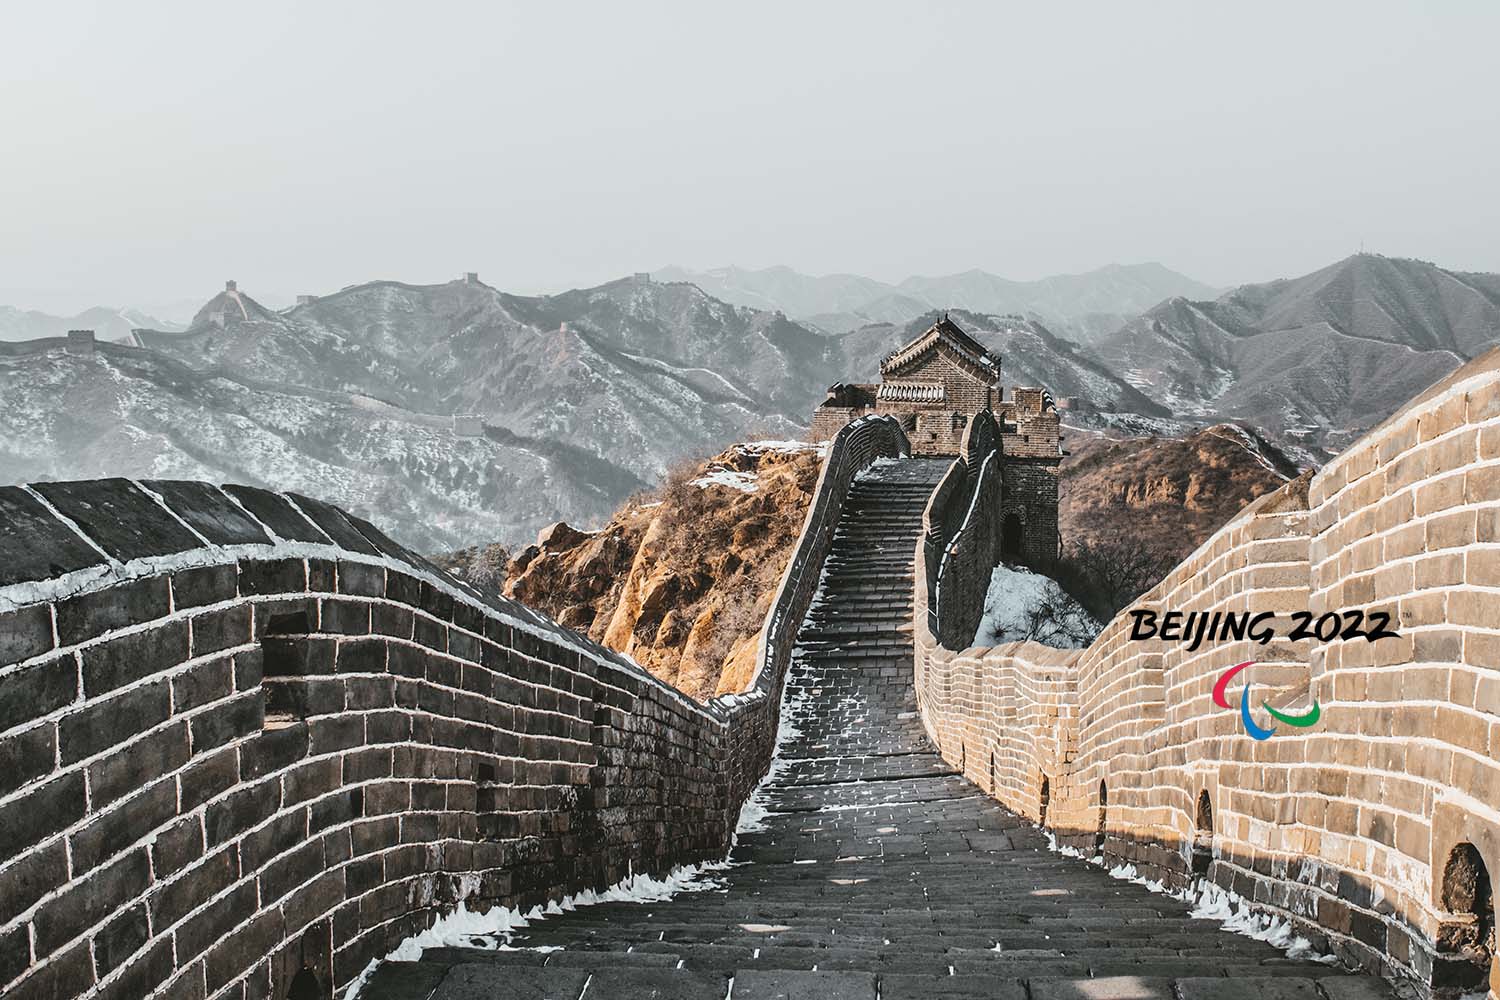 Die eingeschneite Chinesische Mauer. Rechts im Bild auch ein Logo der Paralympics 2022 Beijing.